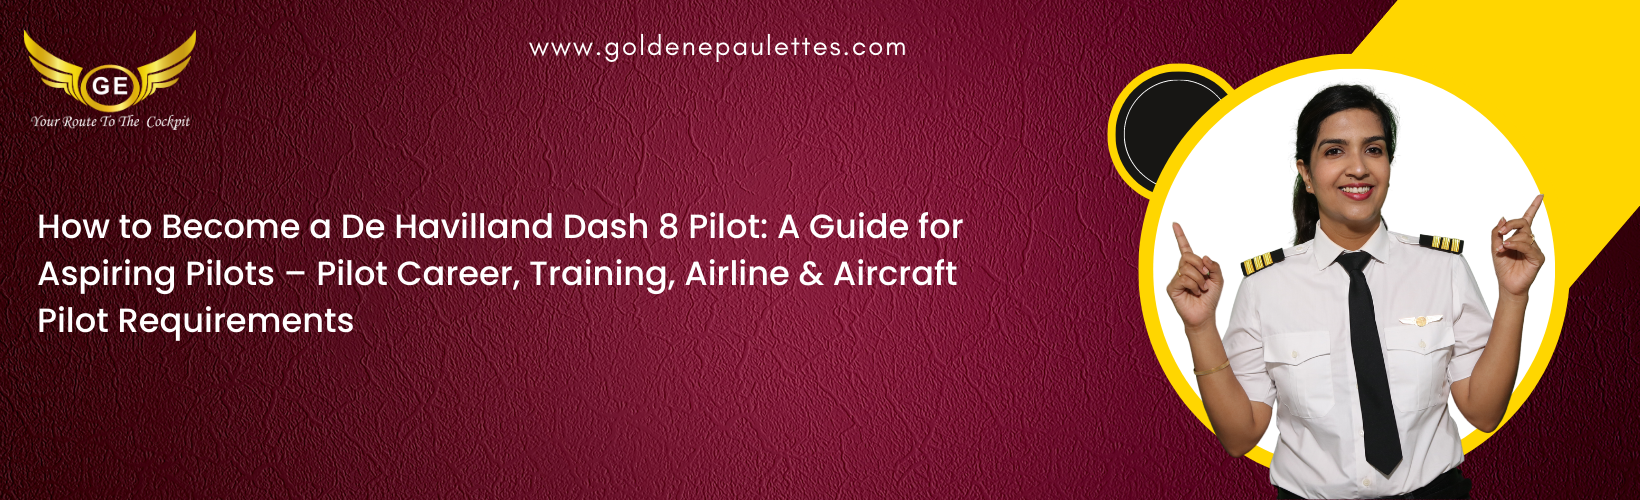 How to Become a De Havilland Dash 8 Pilot